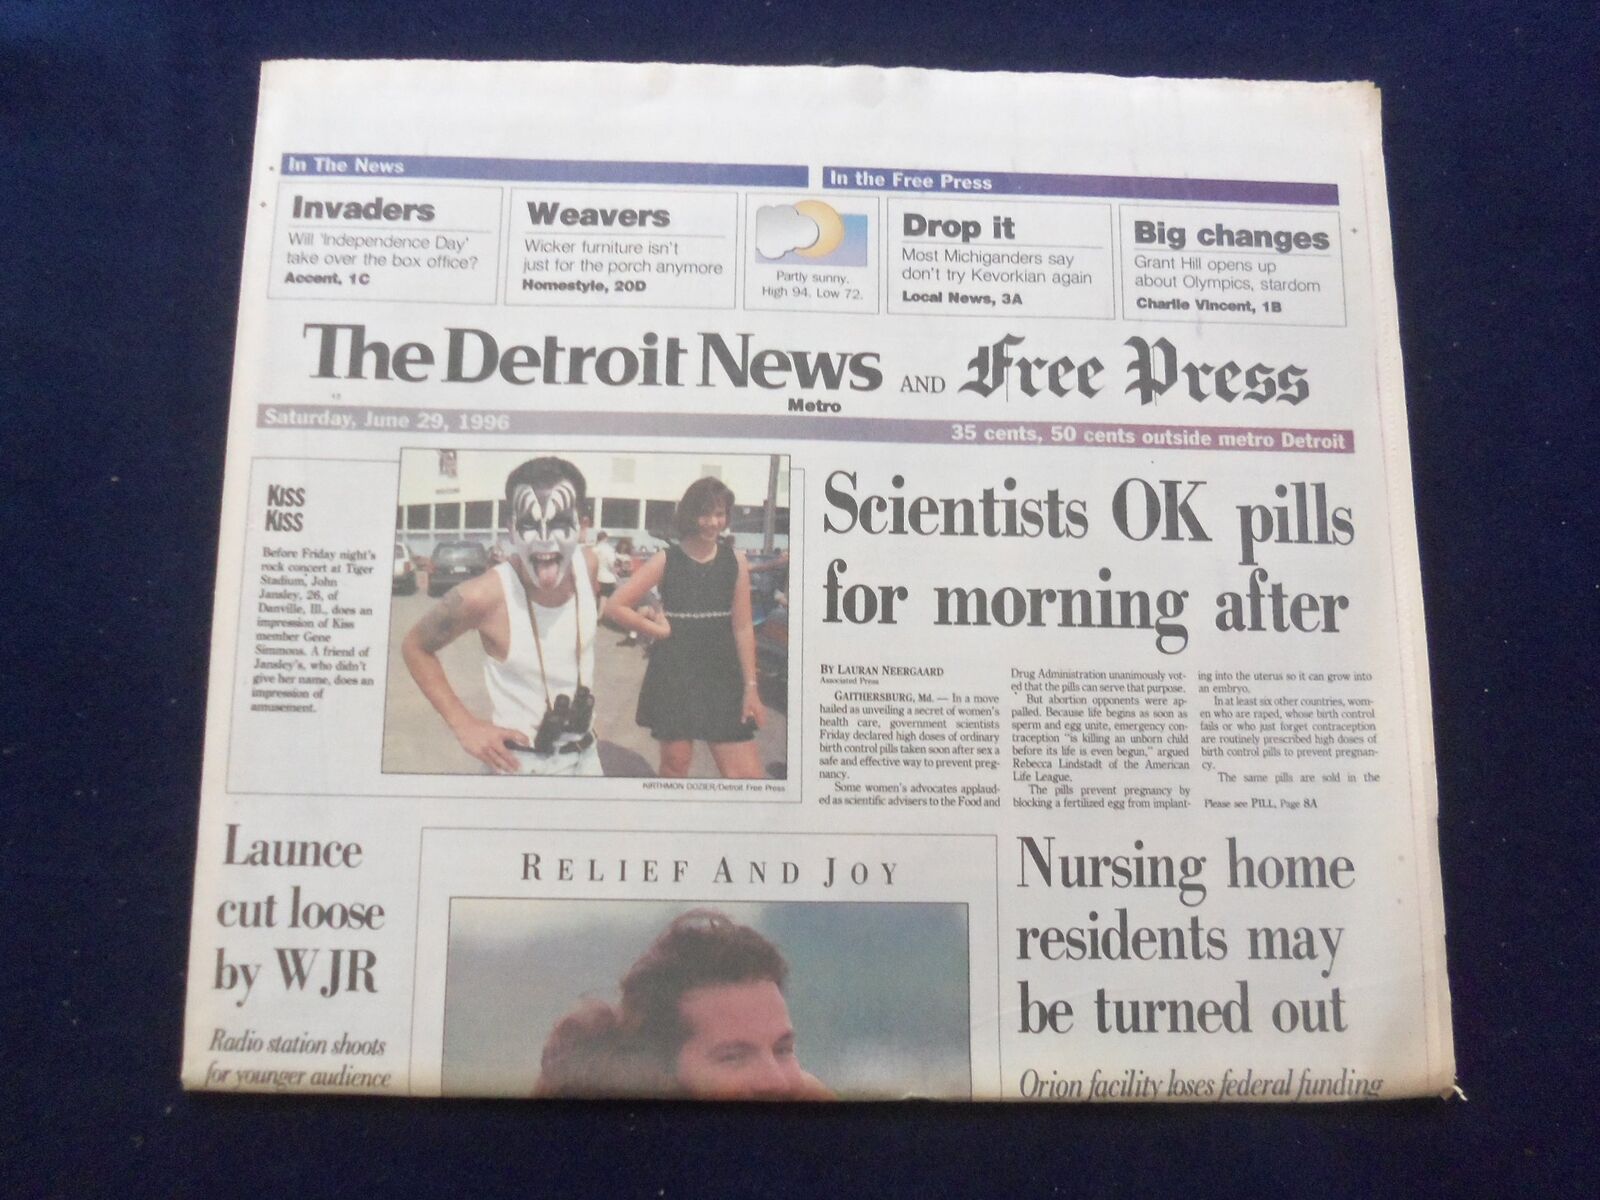 1996 JUNE 29 DETROIT NEWS/FREE PRESS NEWSPAPER-OK MORNING AFTER PILLS - NP 7215